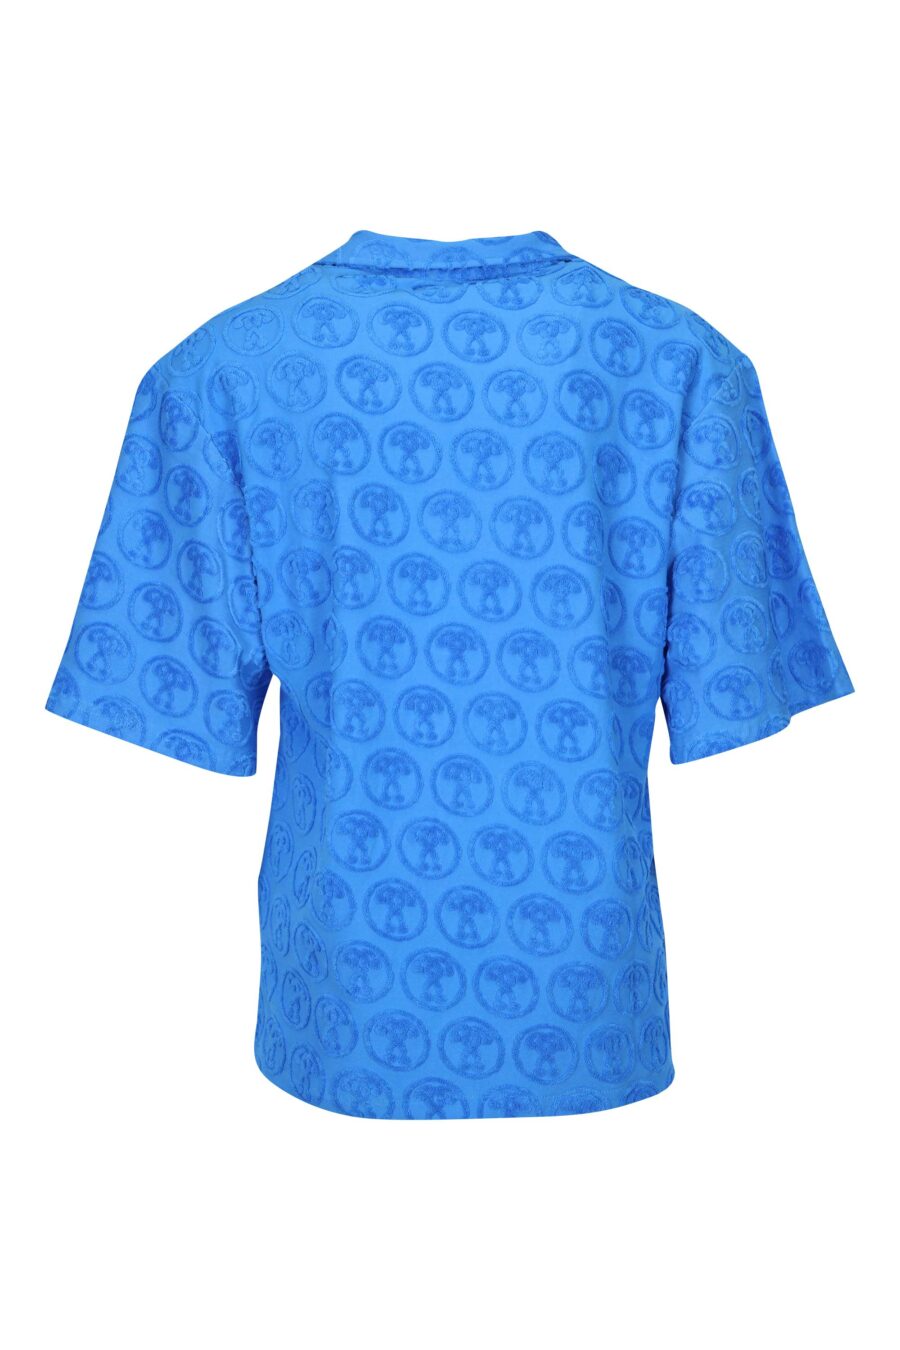 Camisa azul de manga curta com "logótipo por todo o lado" dupla pergunta - 667113670638 1